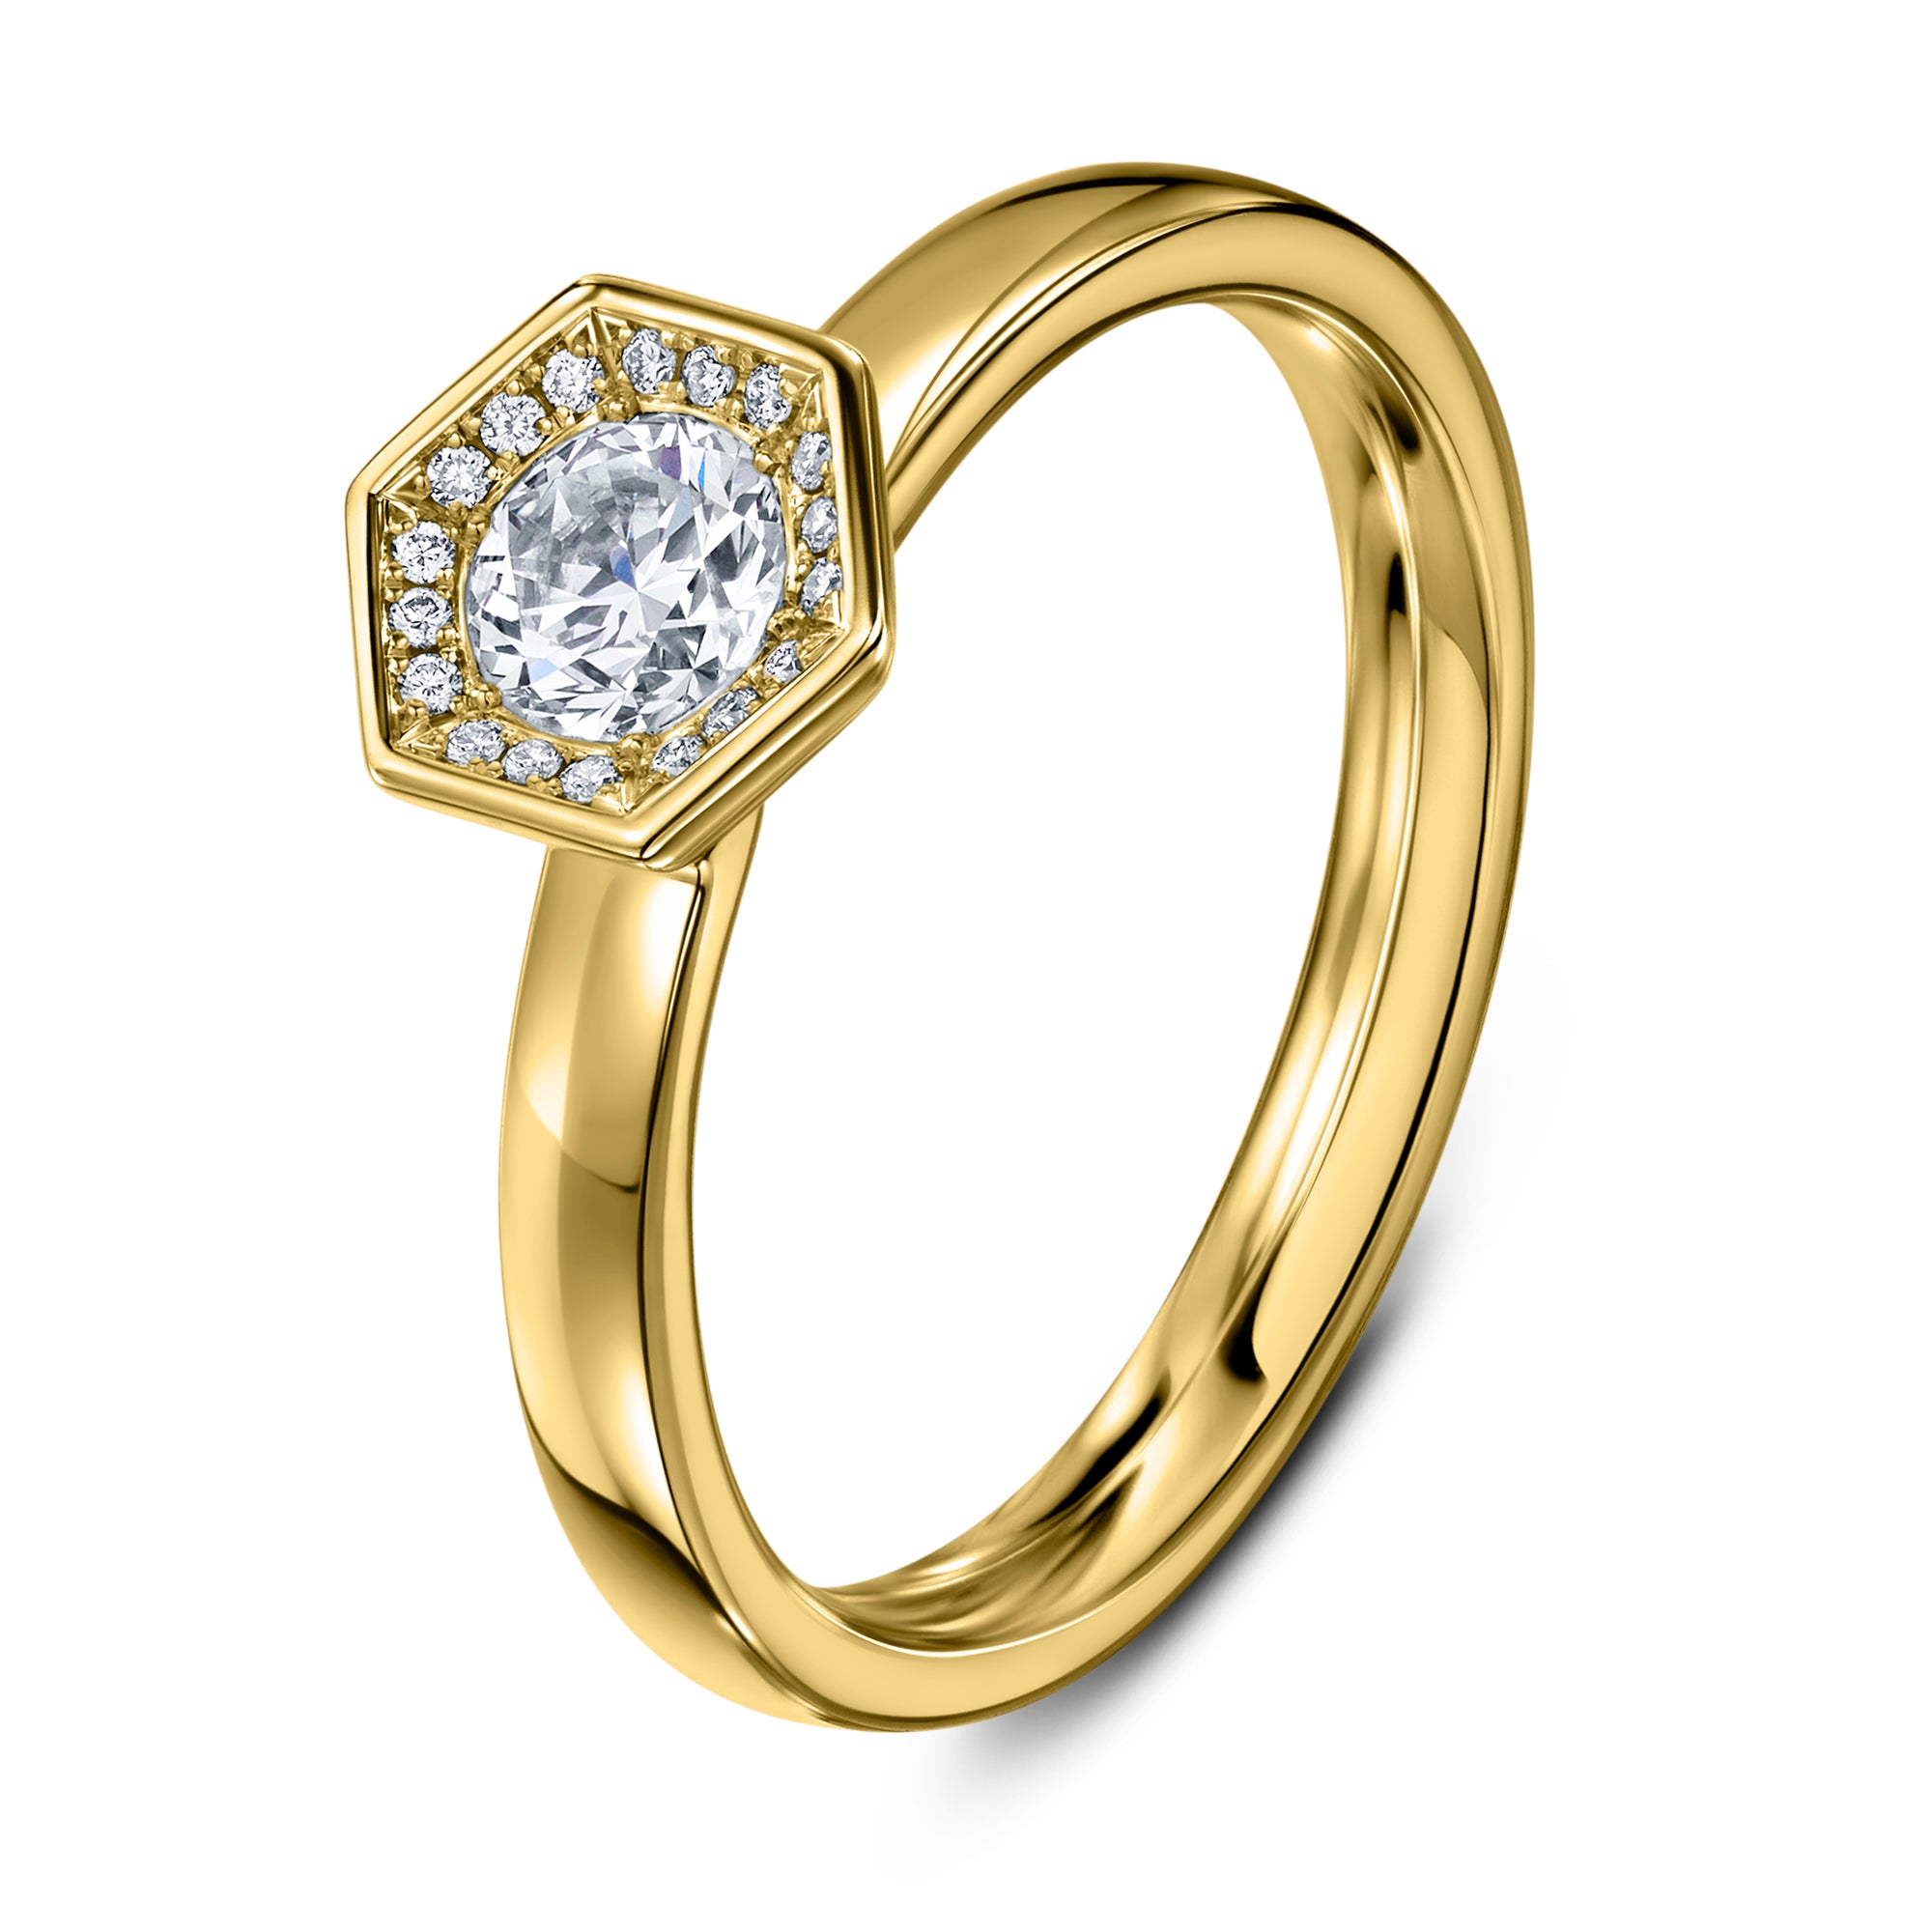 Chapiteau Diamond & 18ct Yellow Gold Ring